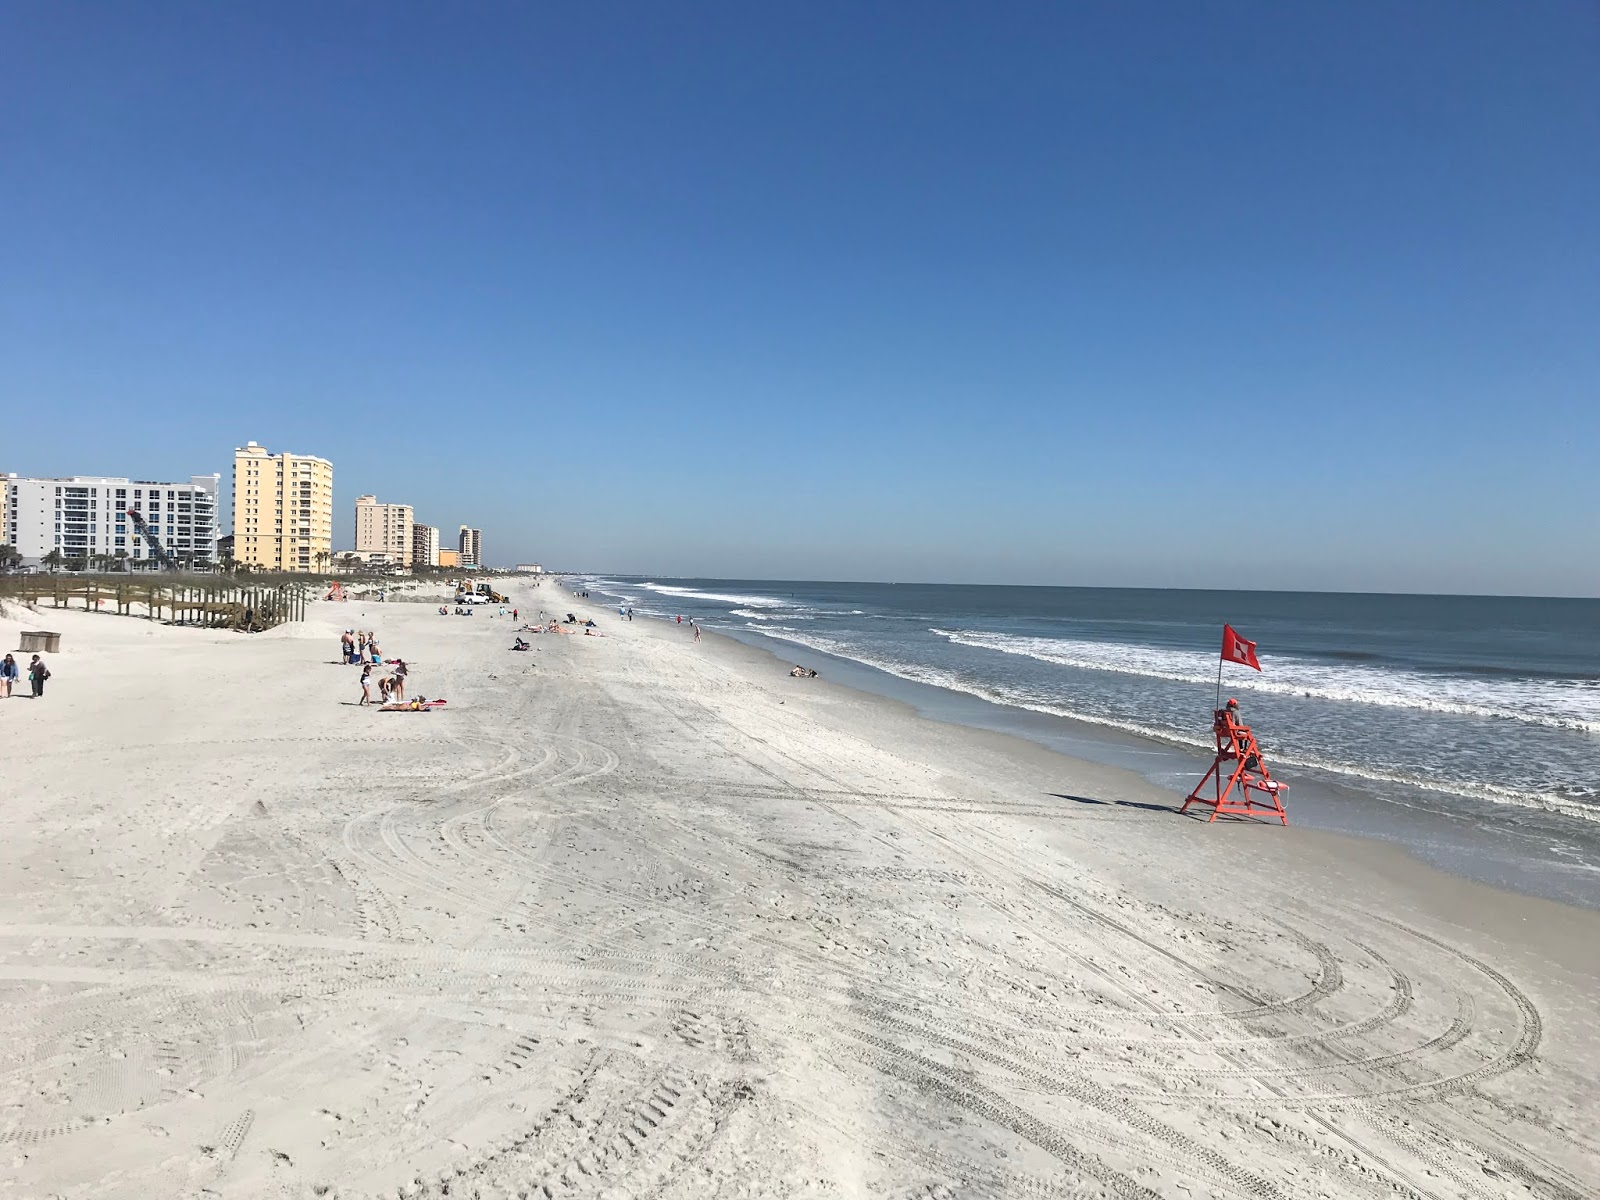 Jacksonville beach'in fotoğrafı parlak kum yüzey ile